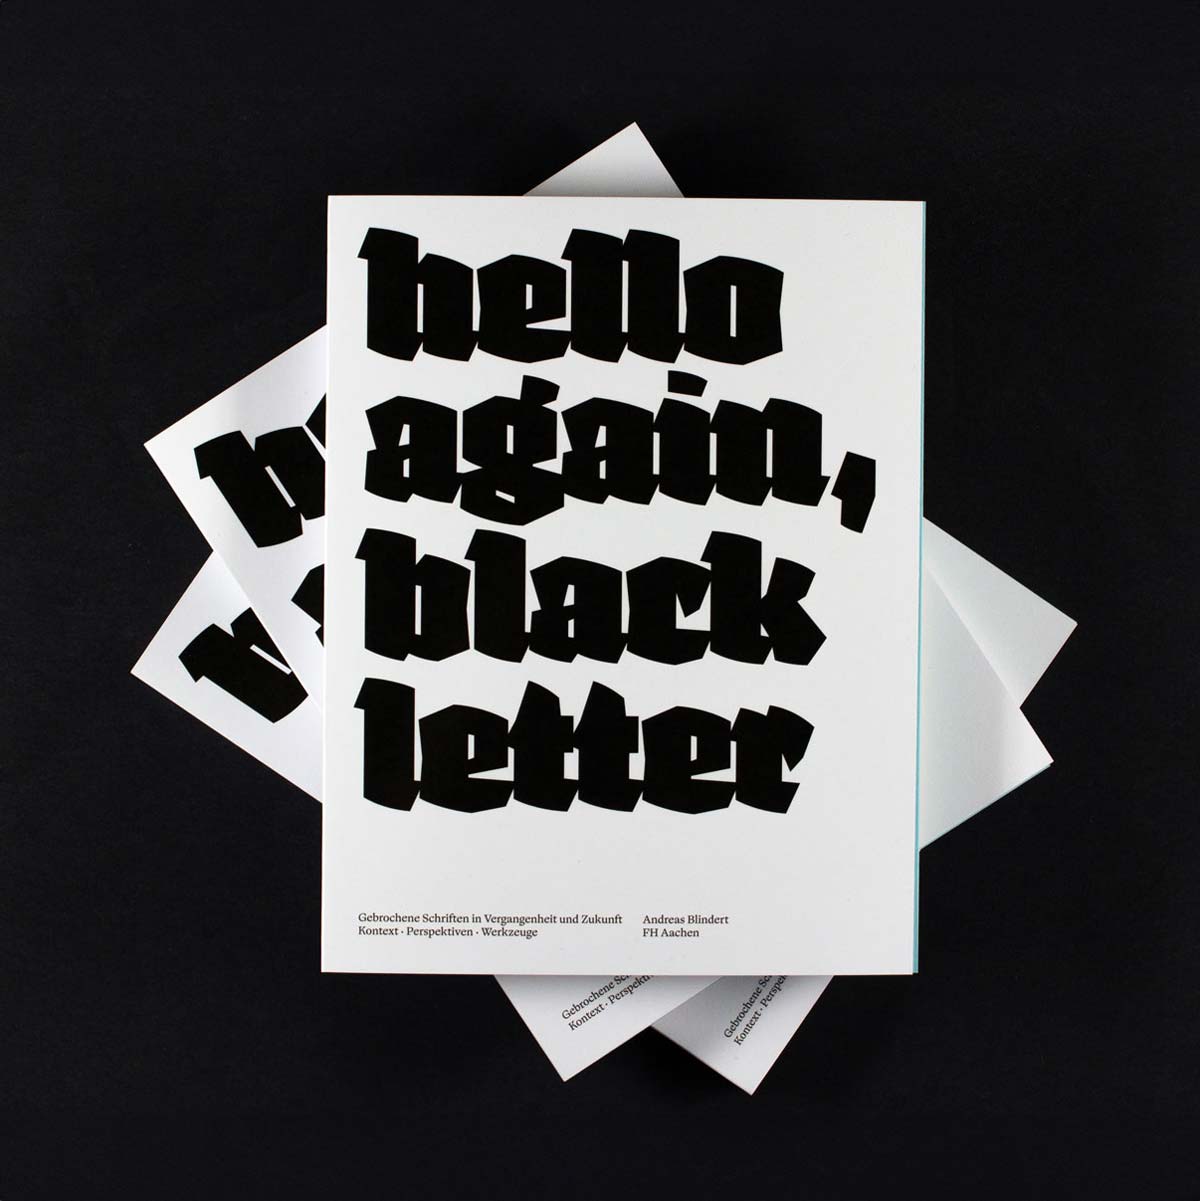 Andreas Blindert hello again, black letter